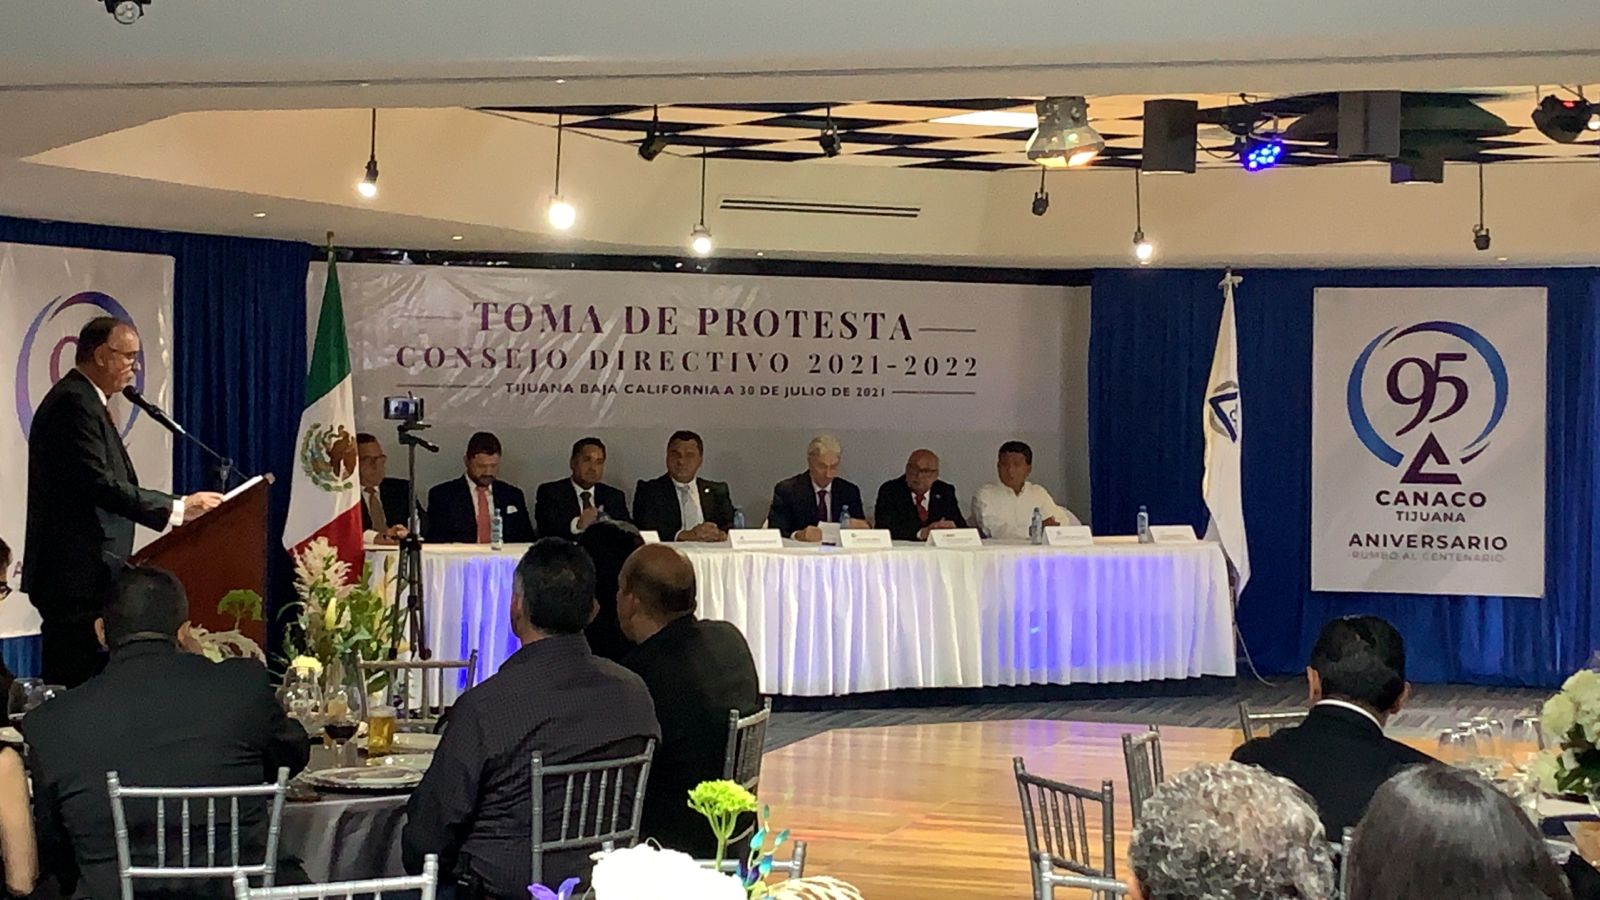 Celebra Canaco 95 años contribuyendo a la economía de Tijuana